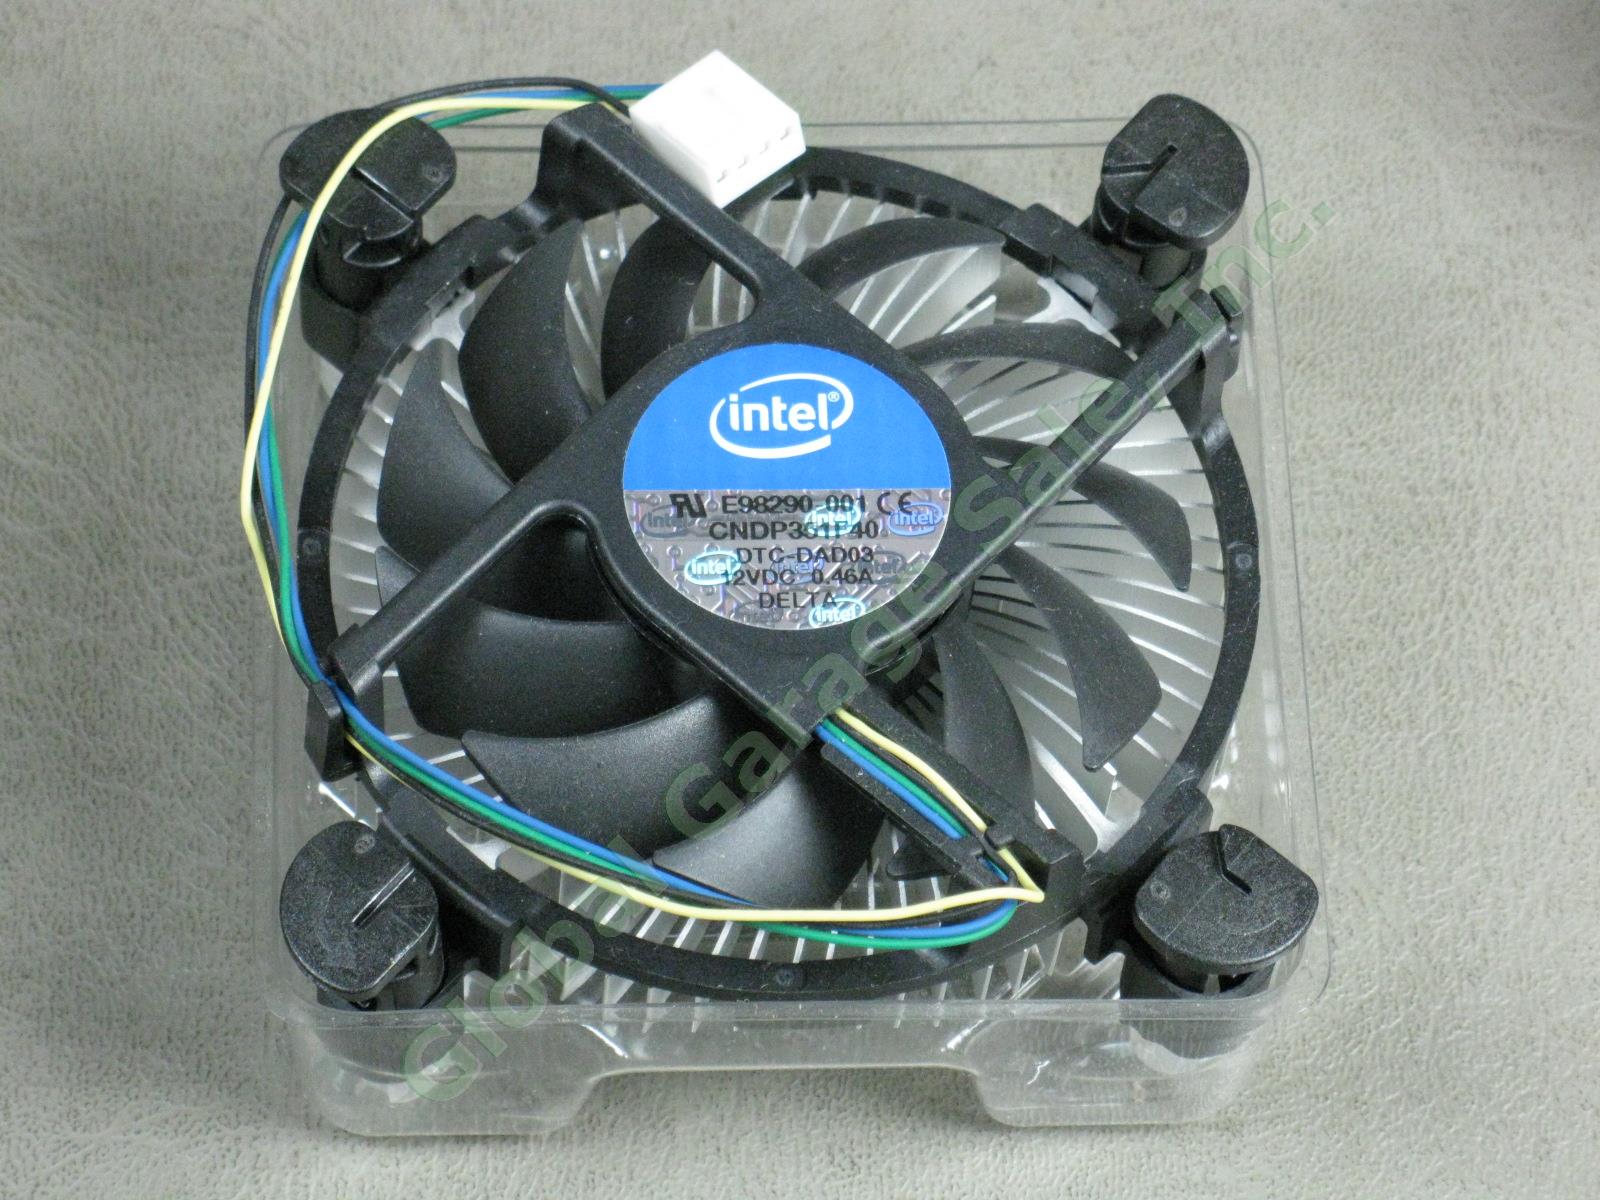 25 NEW Intel E98290-001 LGA1155 Heatsink CPU Cooler Cooling Fans Lot Intel i3 NR 1